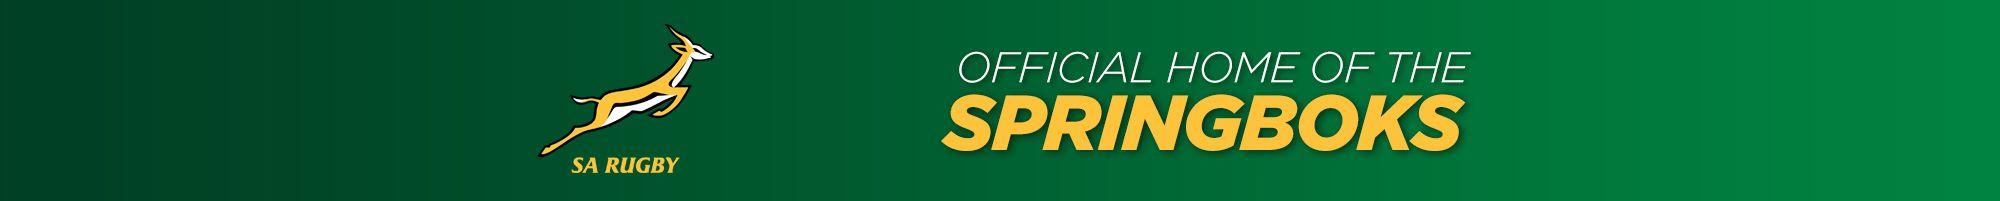 Springboks Logo - SA Rugby - Official Home of the Springboks